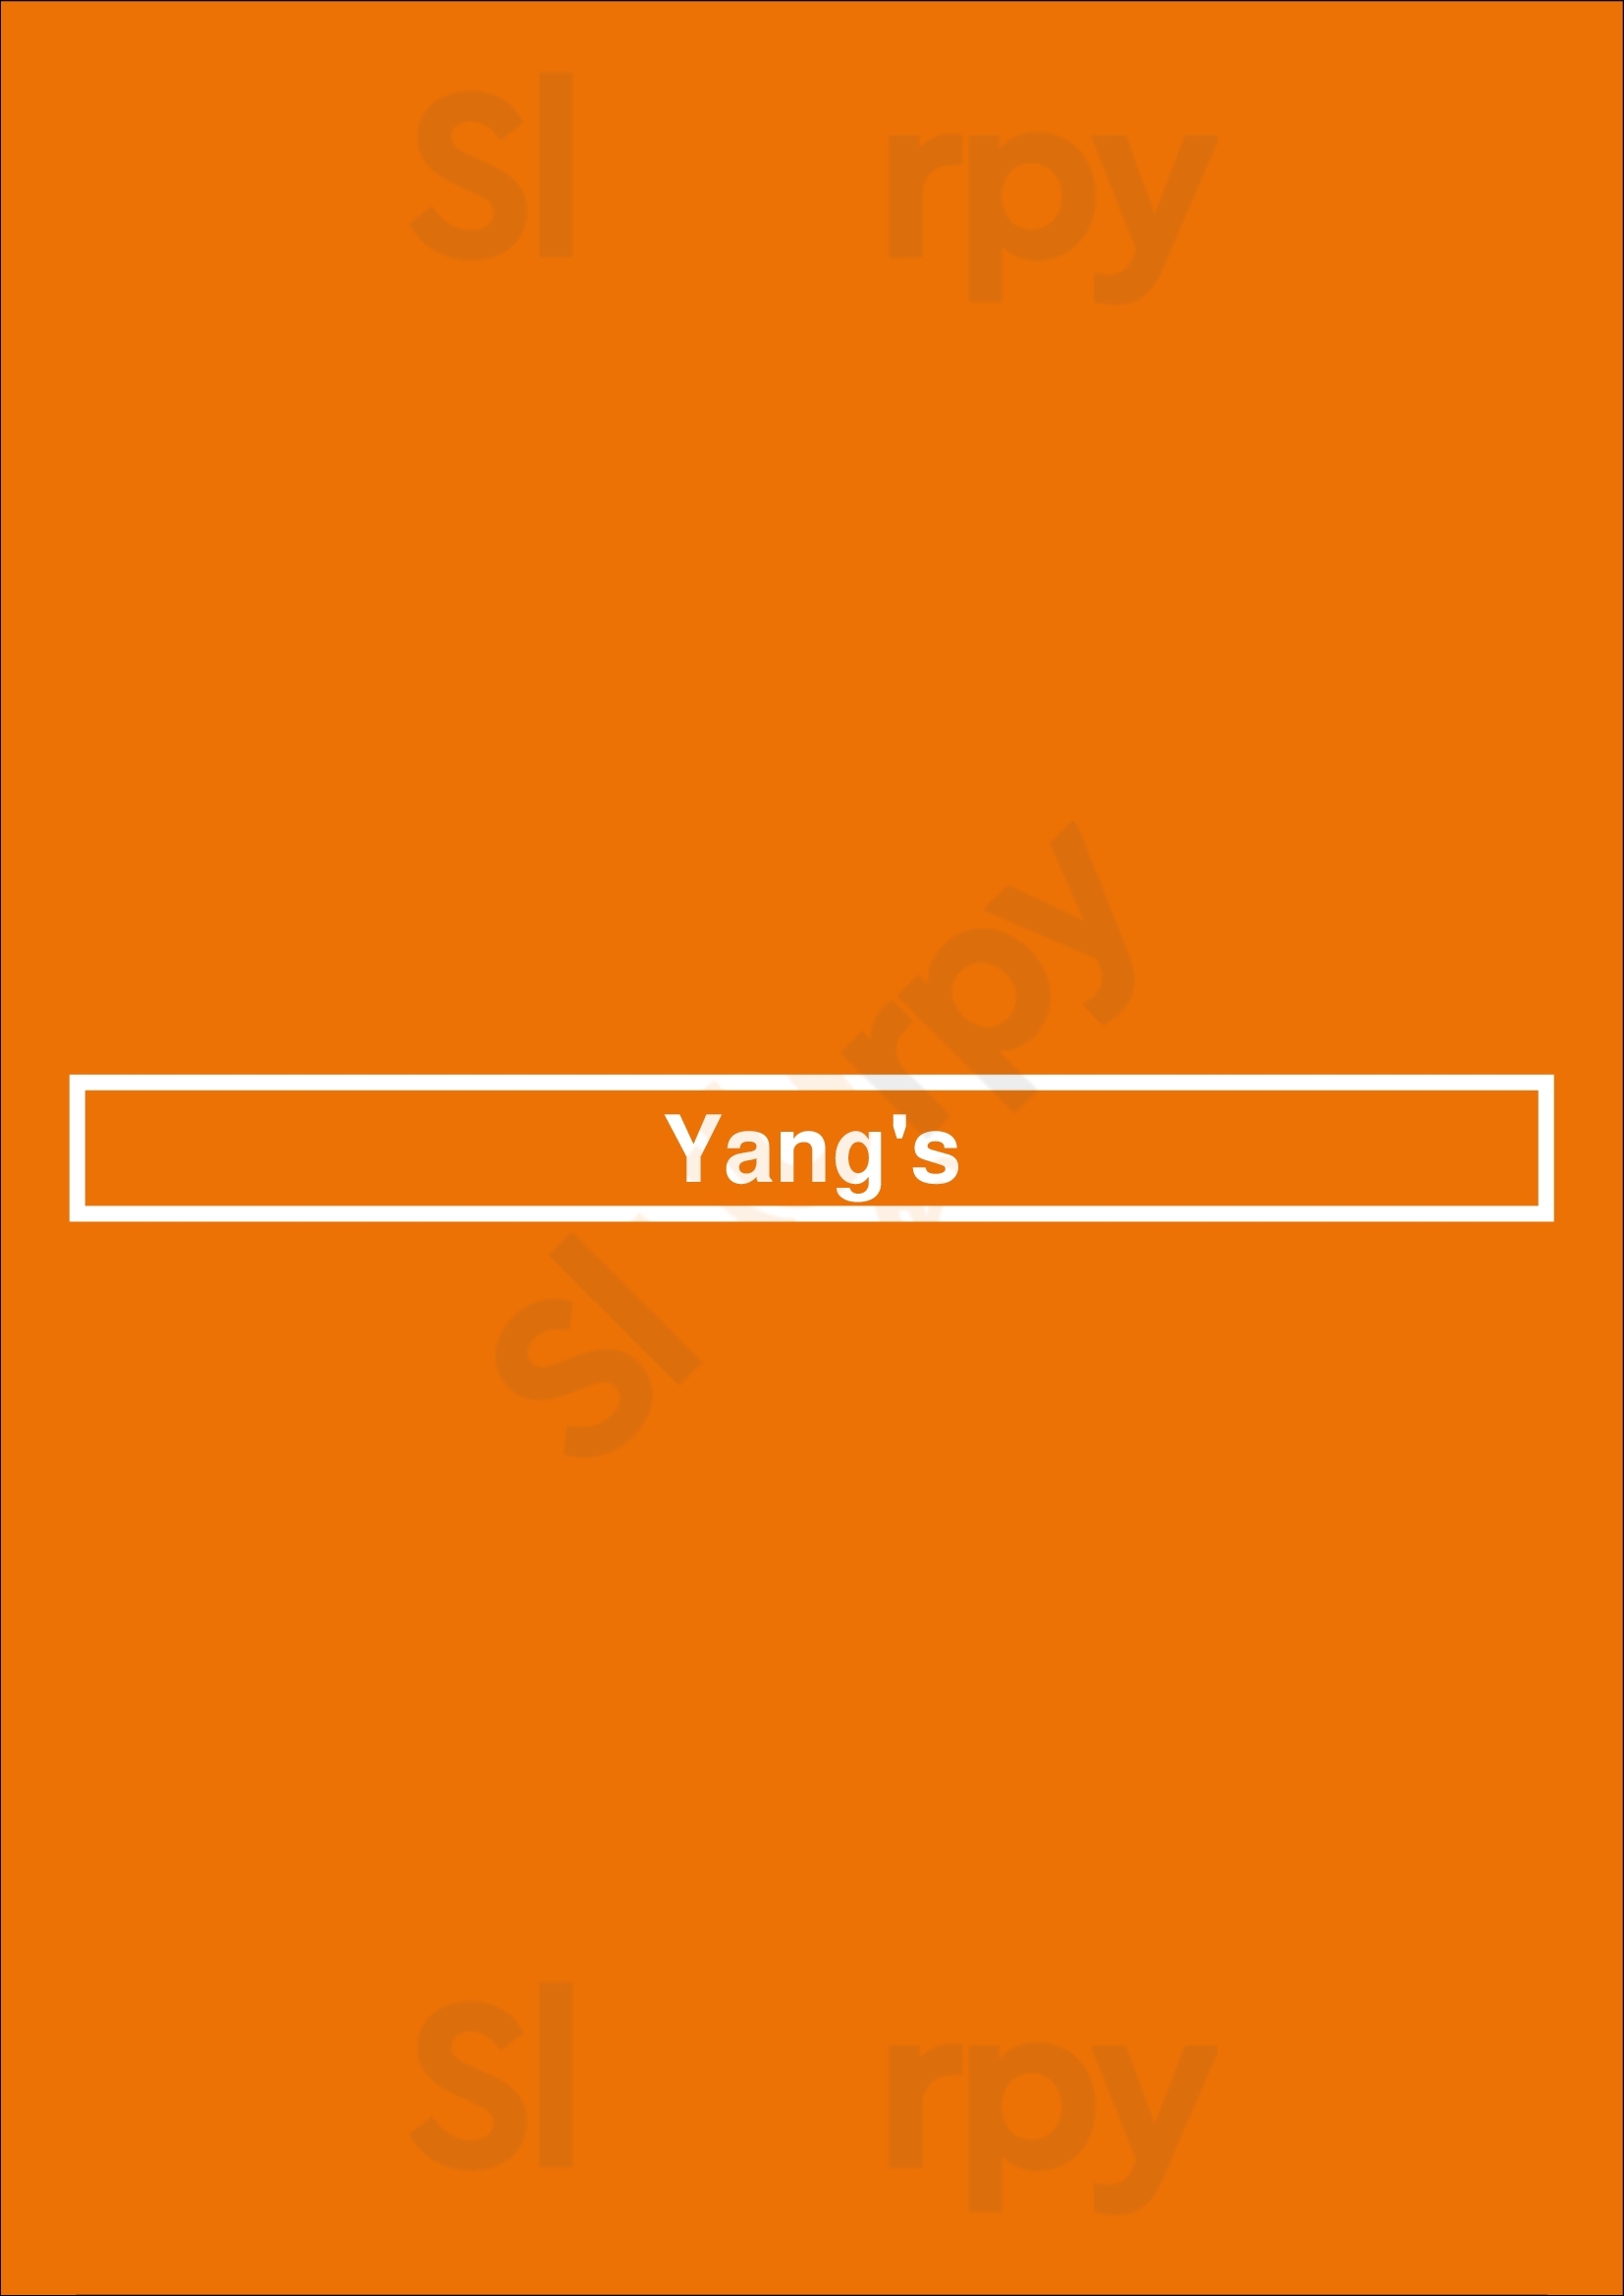 Yang's Dublin Menu - 1